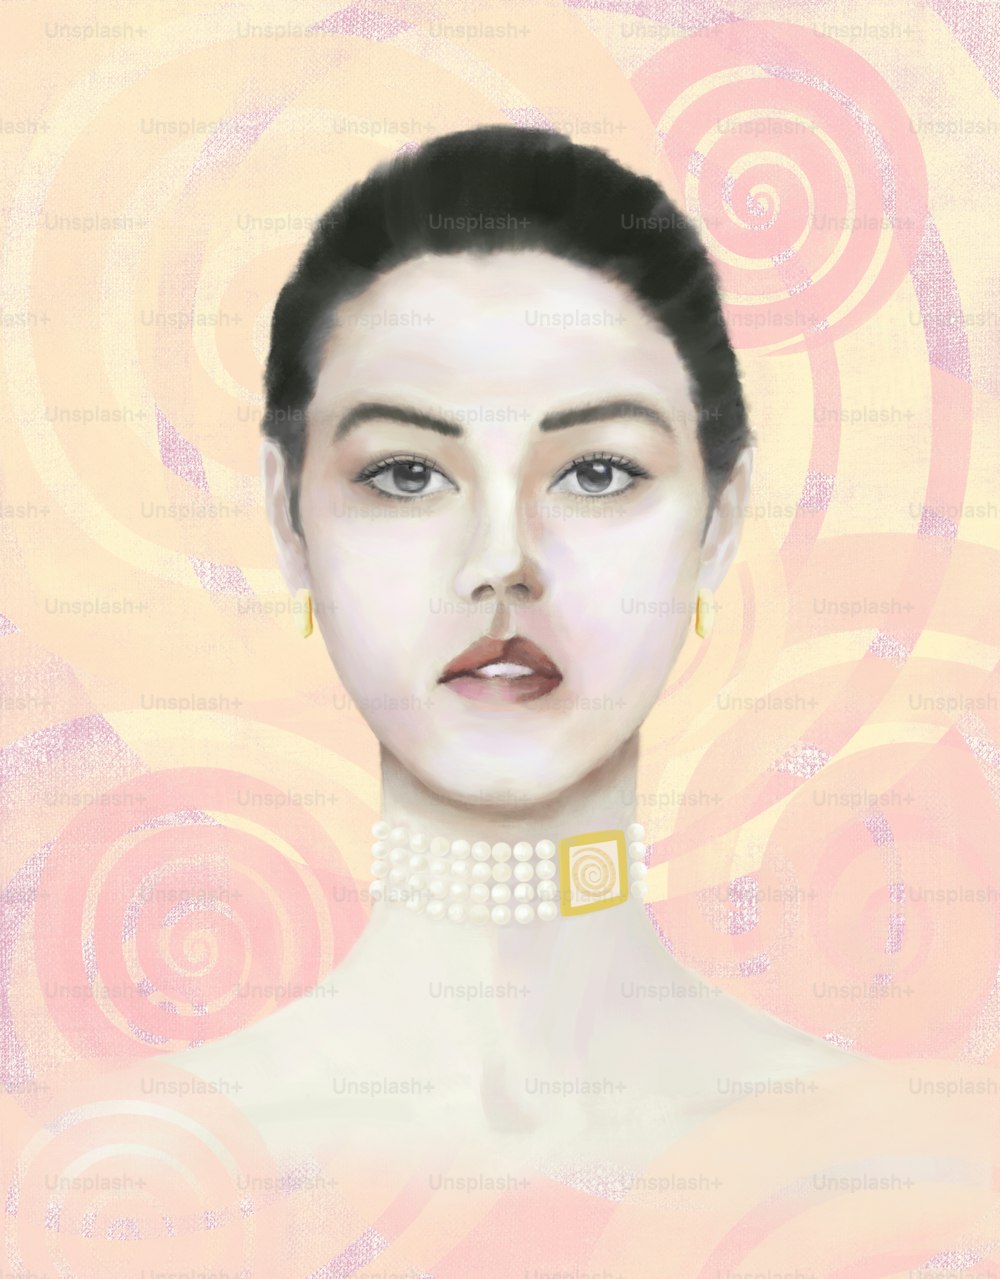 Retrato de una mujer joven con raíces asiáticas y europeas con decoraciones que incluyen el símbolo del sol sobre un fondo geométrico